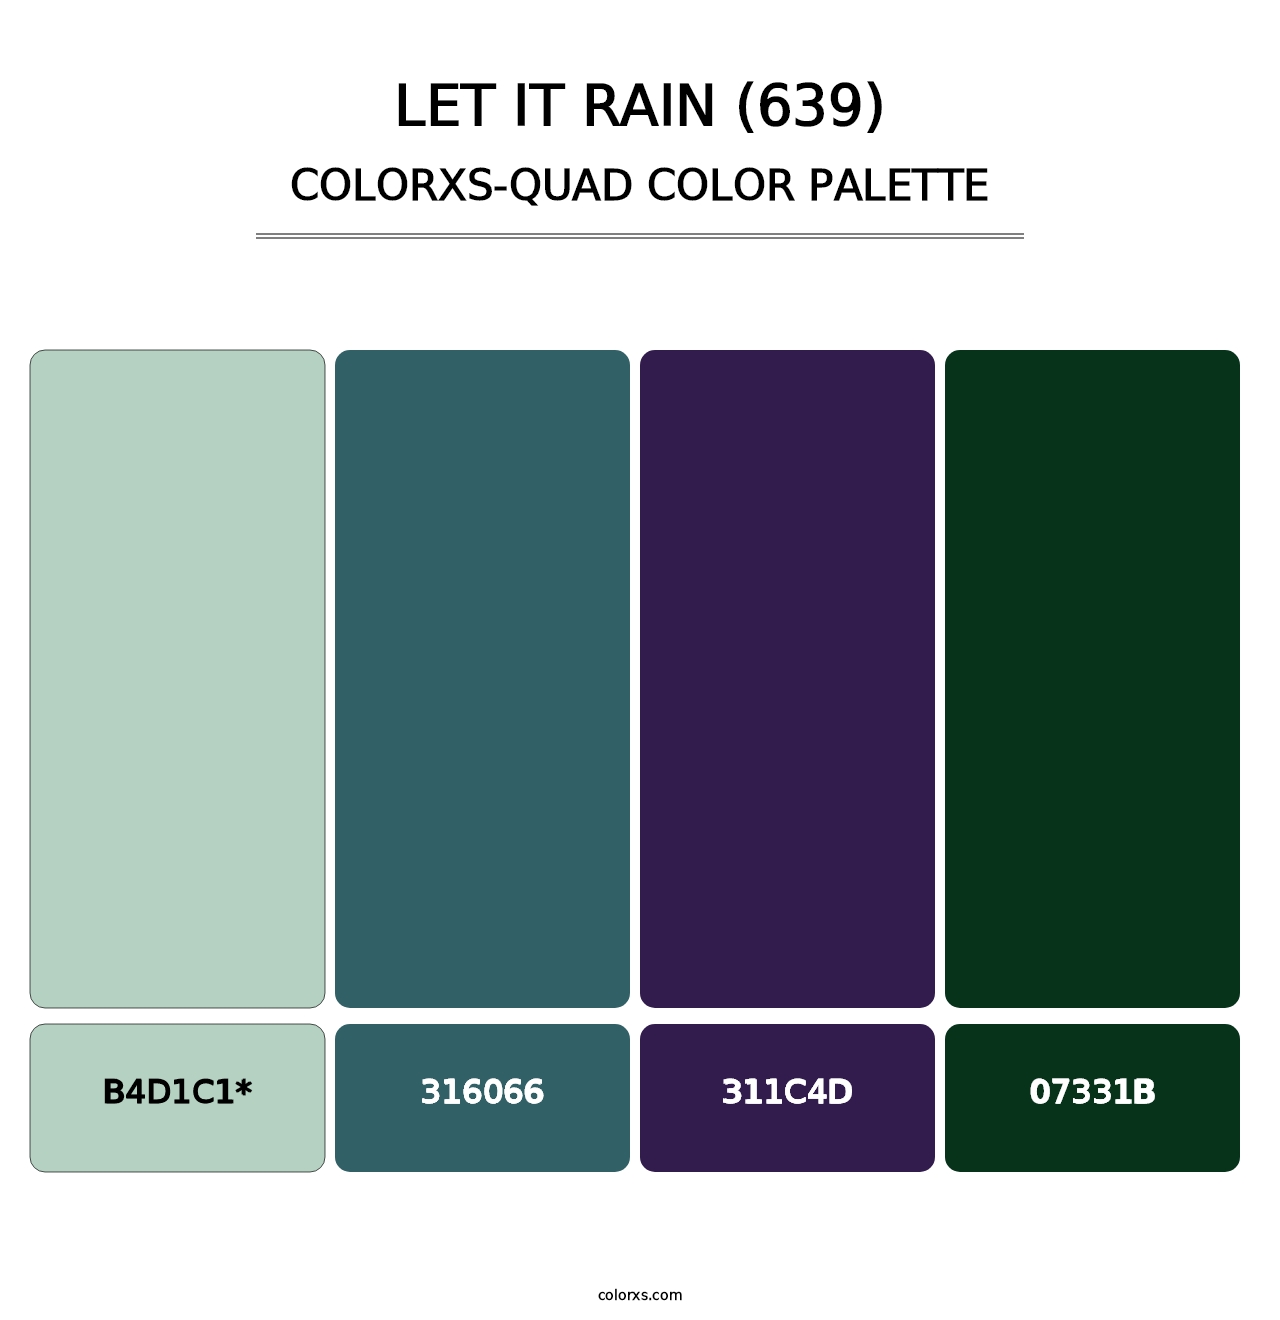 Let It Rain (639) - Colorxs Quad Palette